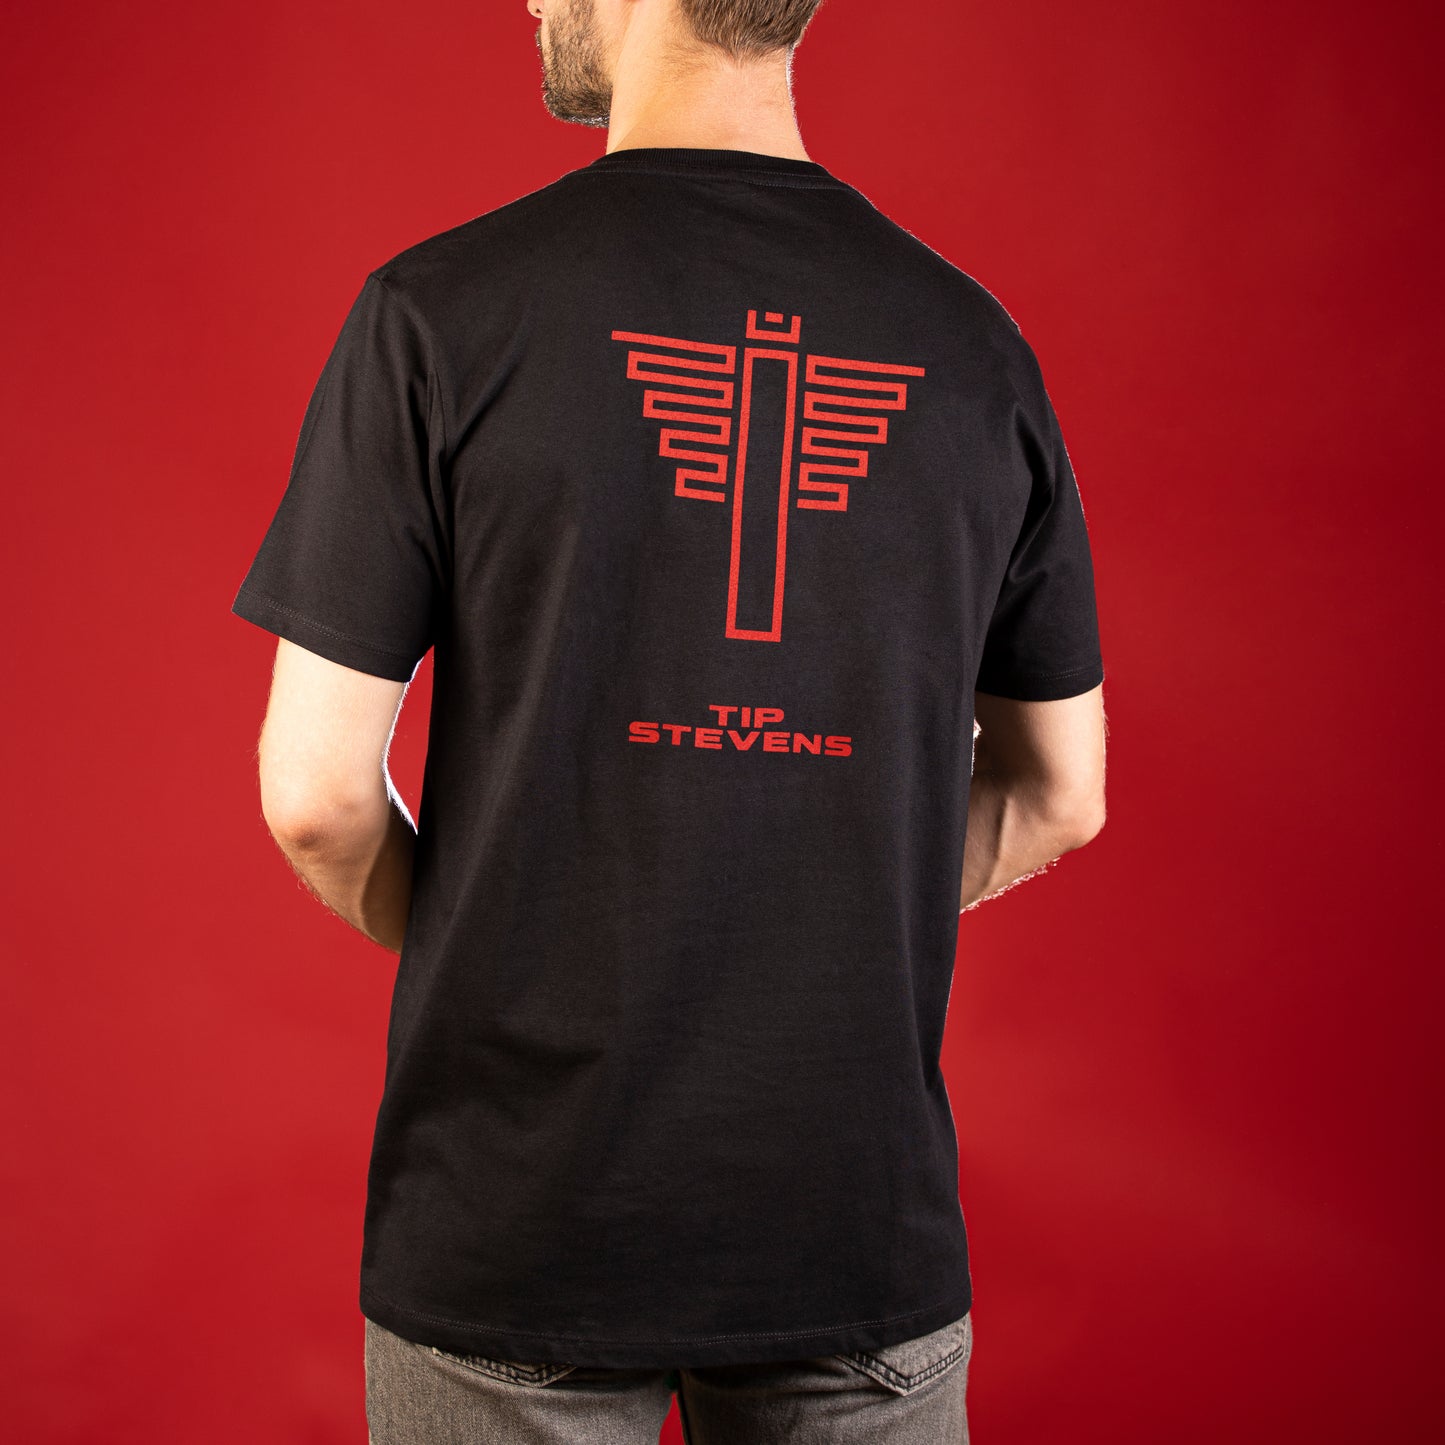 T-Shirt - Tip Stevens - Totem